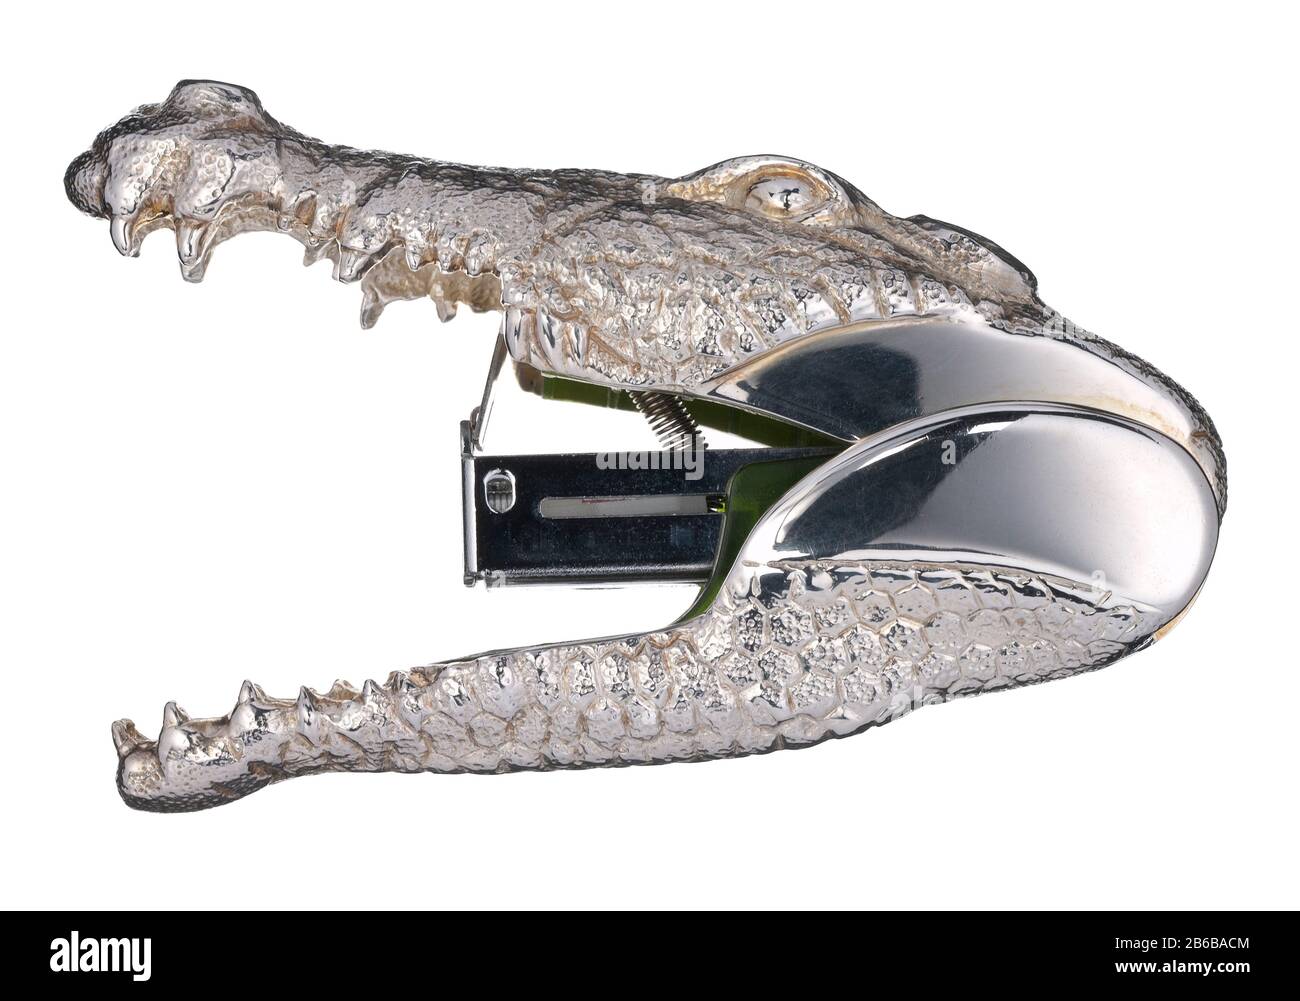 Ein silbernes Krokodilkiefer-Design, das zu einem Hefter gemacht wurde. Stockfoto